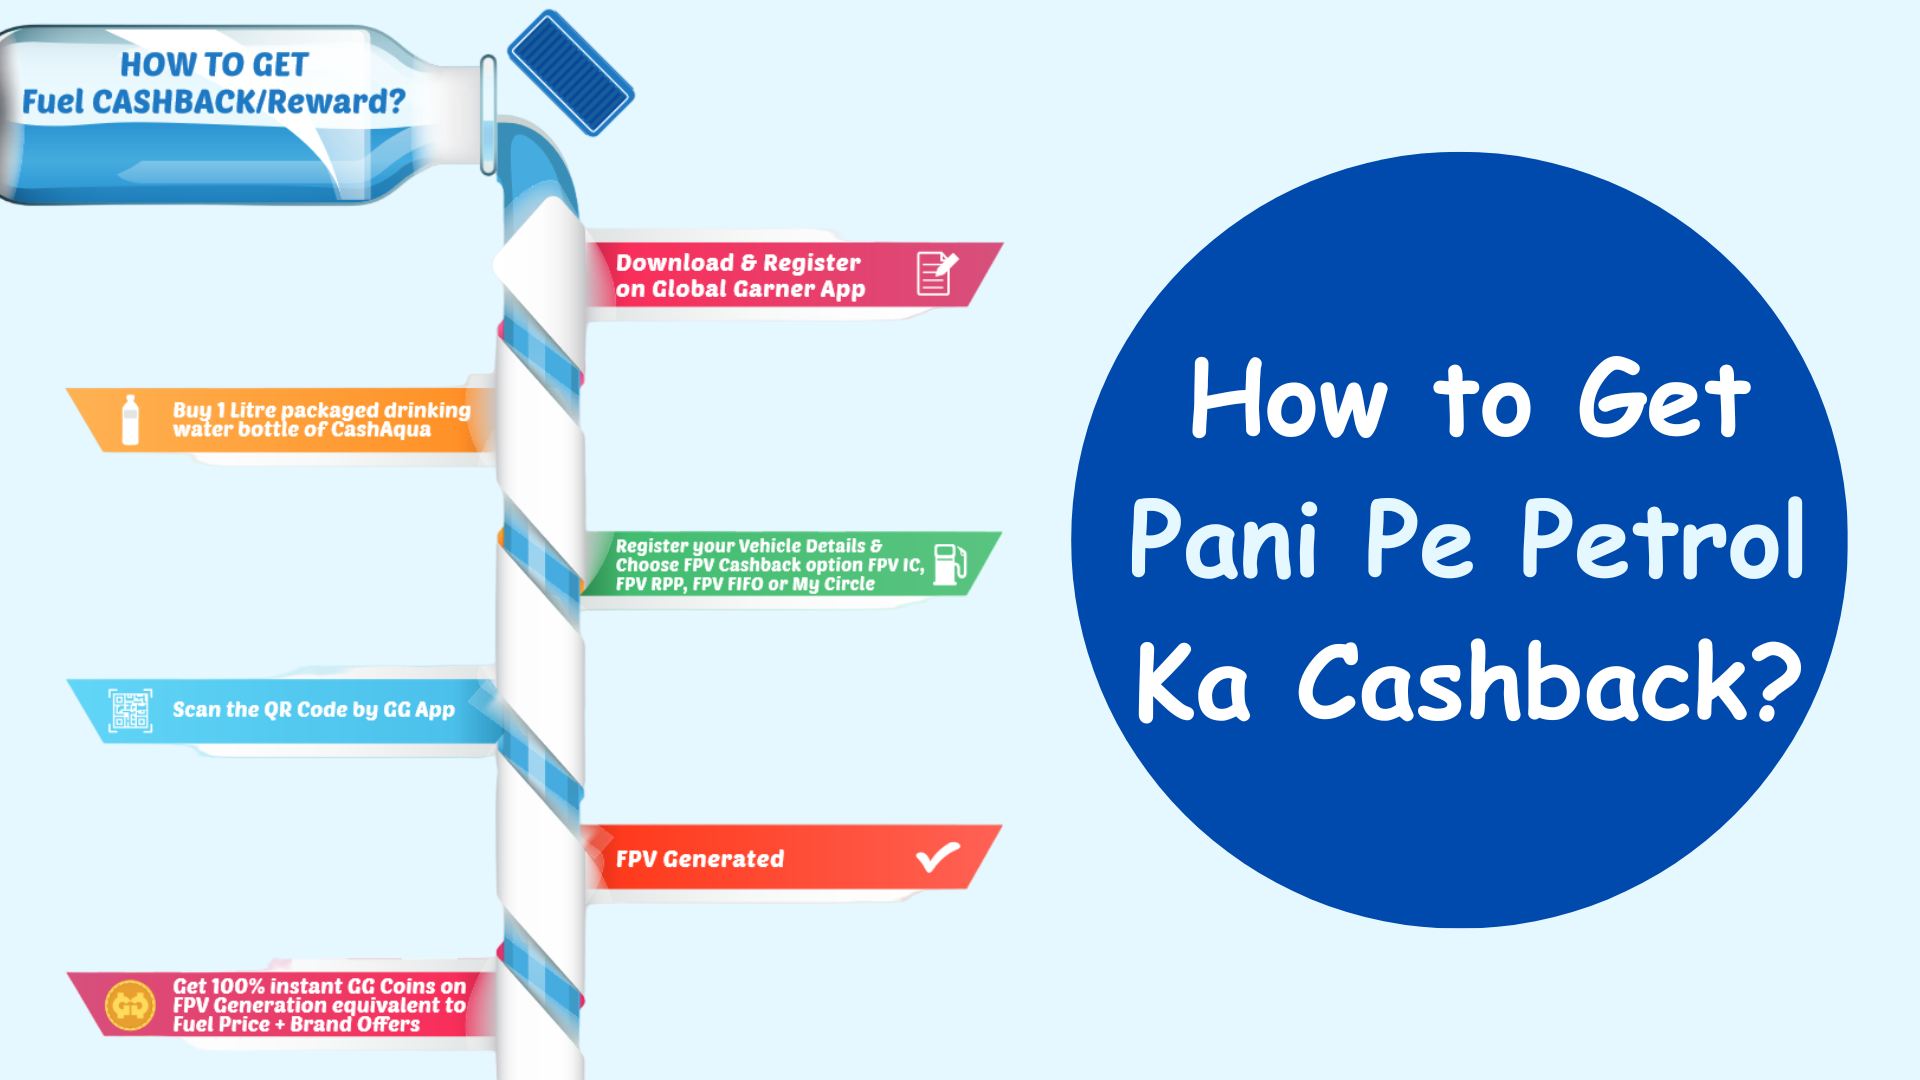 How to Get Pani Pe Petrol Ka Cashback